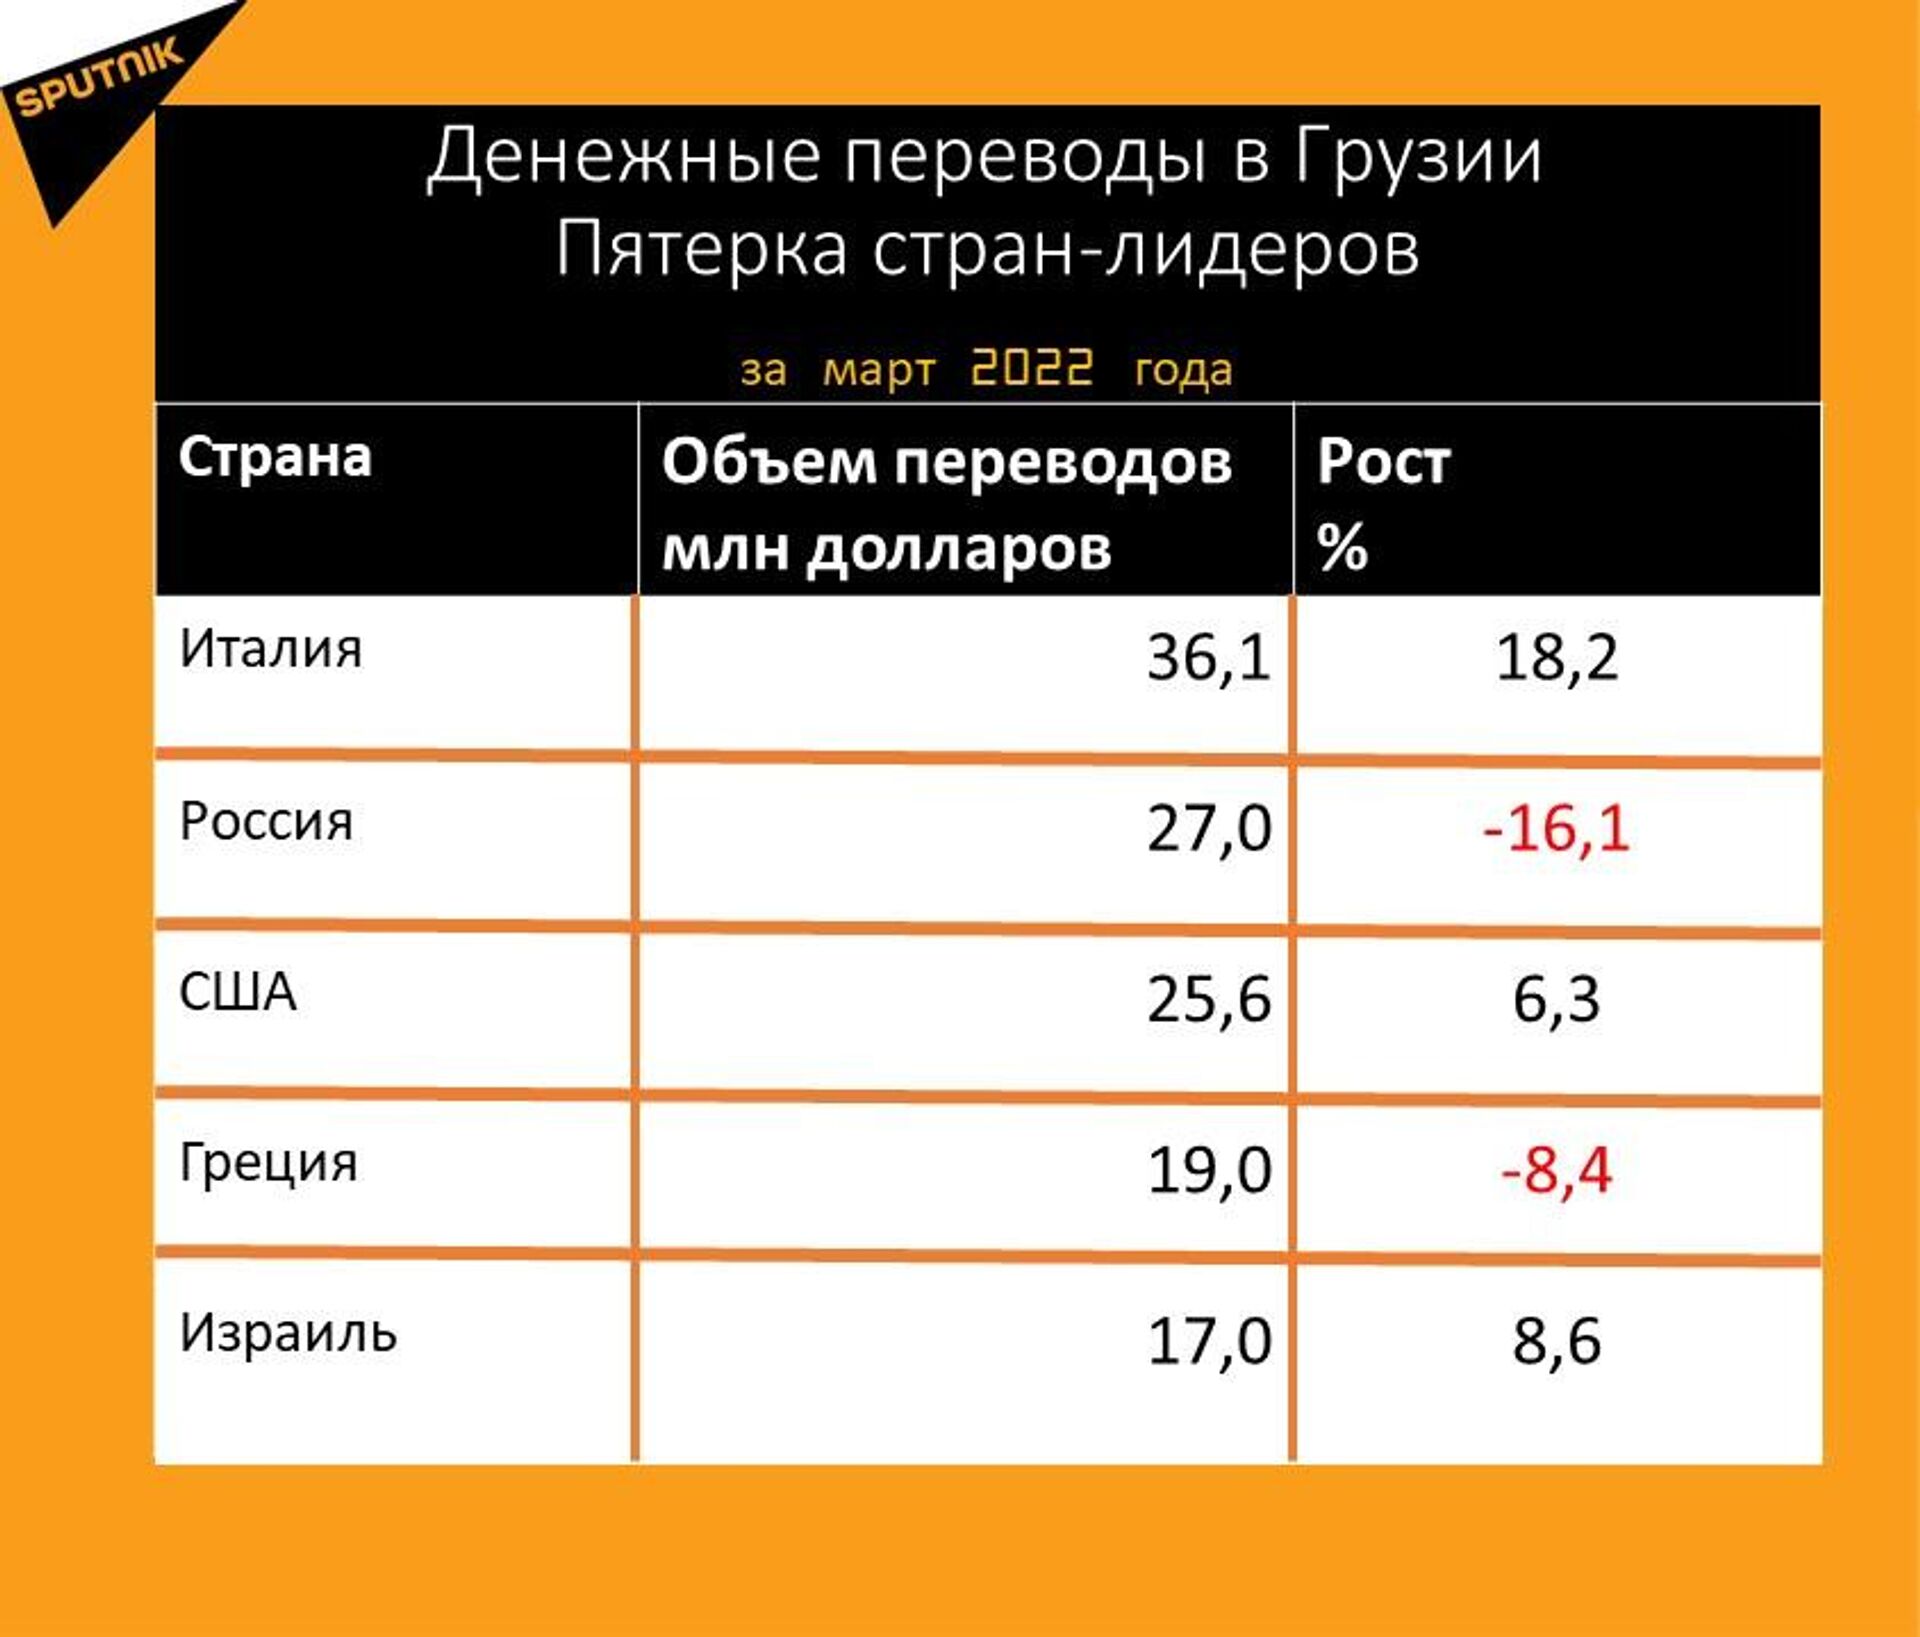 Статистика денежных переводов в Грузию за март 2022 года - Sputnik Грузия, 1920, 15.04.2022